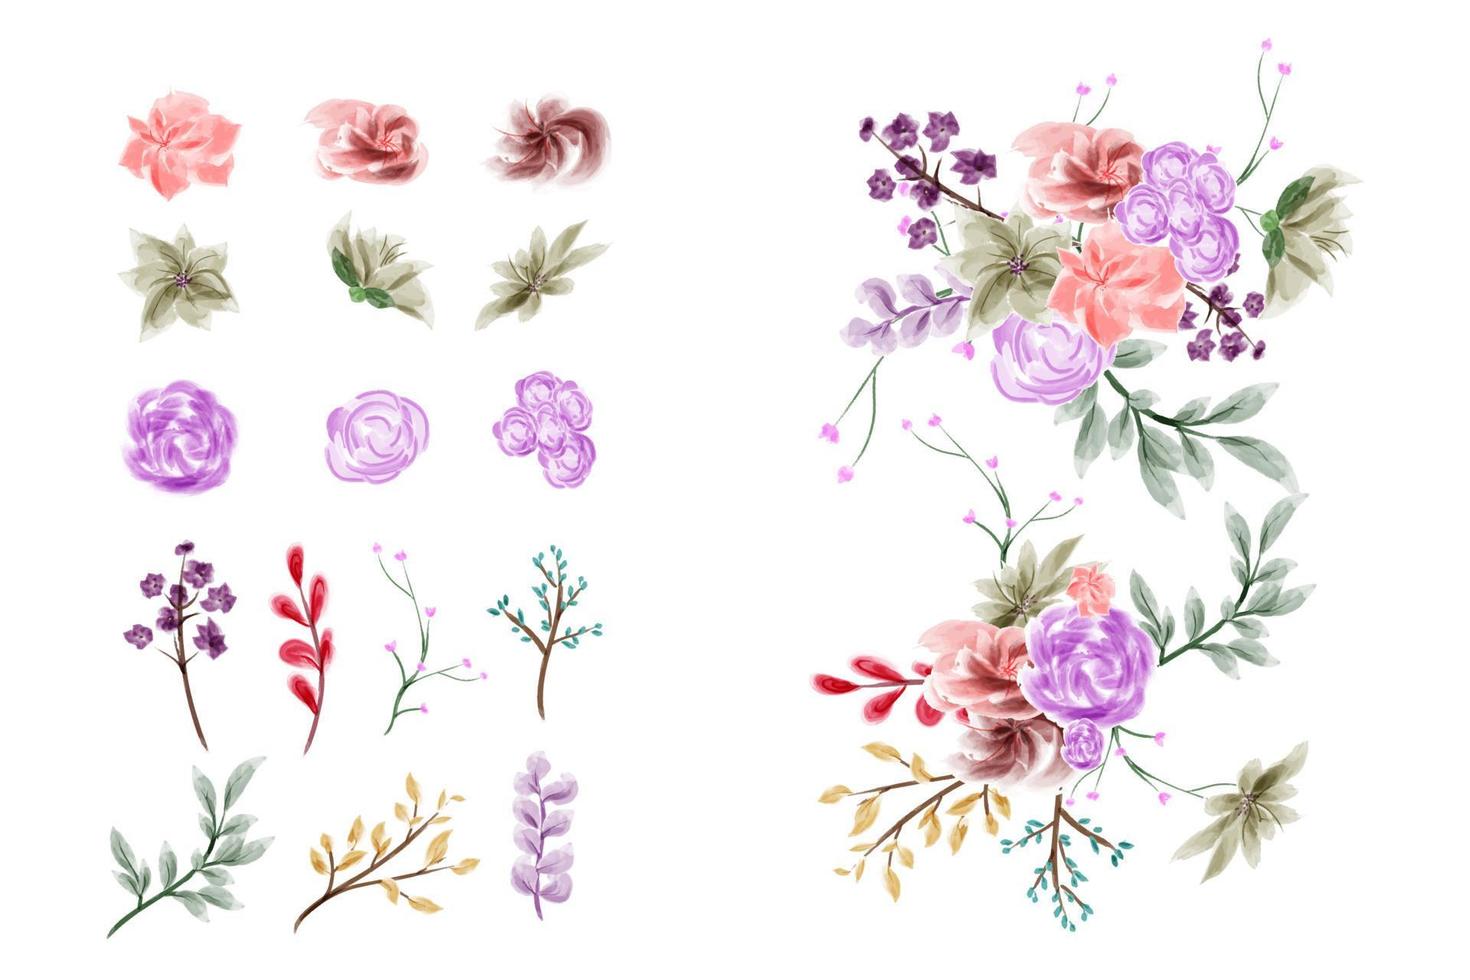 sammlung handgemachter aquarellblumenkunst handgezeichnete illustrationen vektor